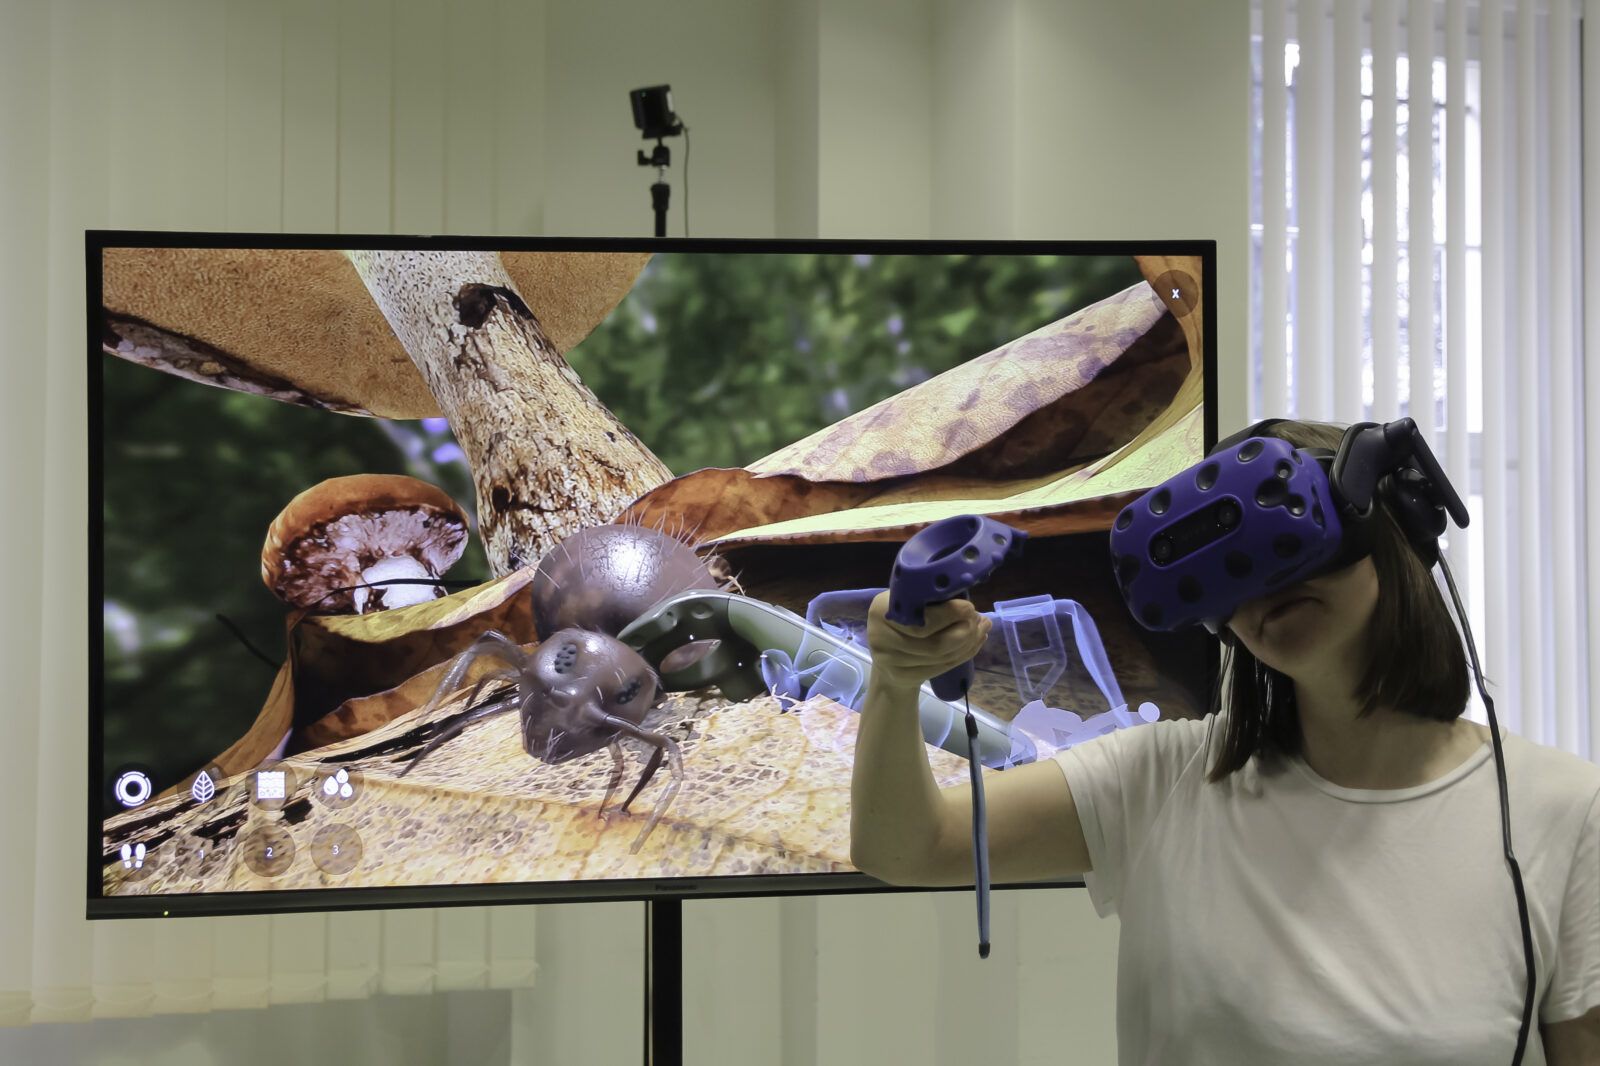 Eine Nutzerin betrachtet einen Springschwanz mit einer 3D-Brille. Im Hintergrund ist der Monitor zu sehen mit dem Springschwanz zu sehen.